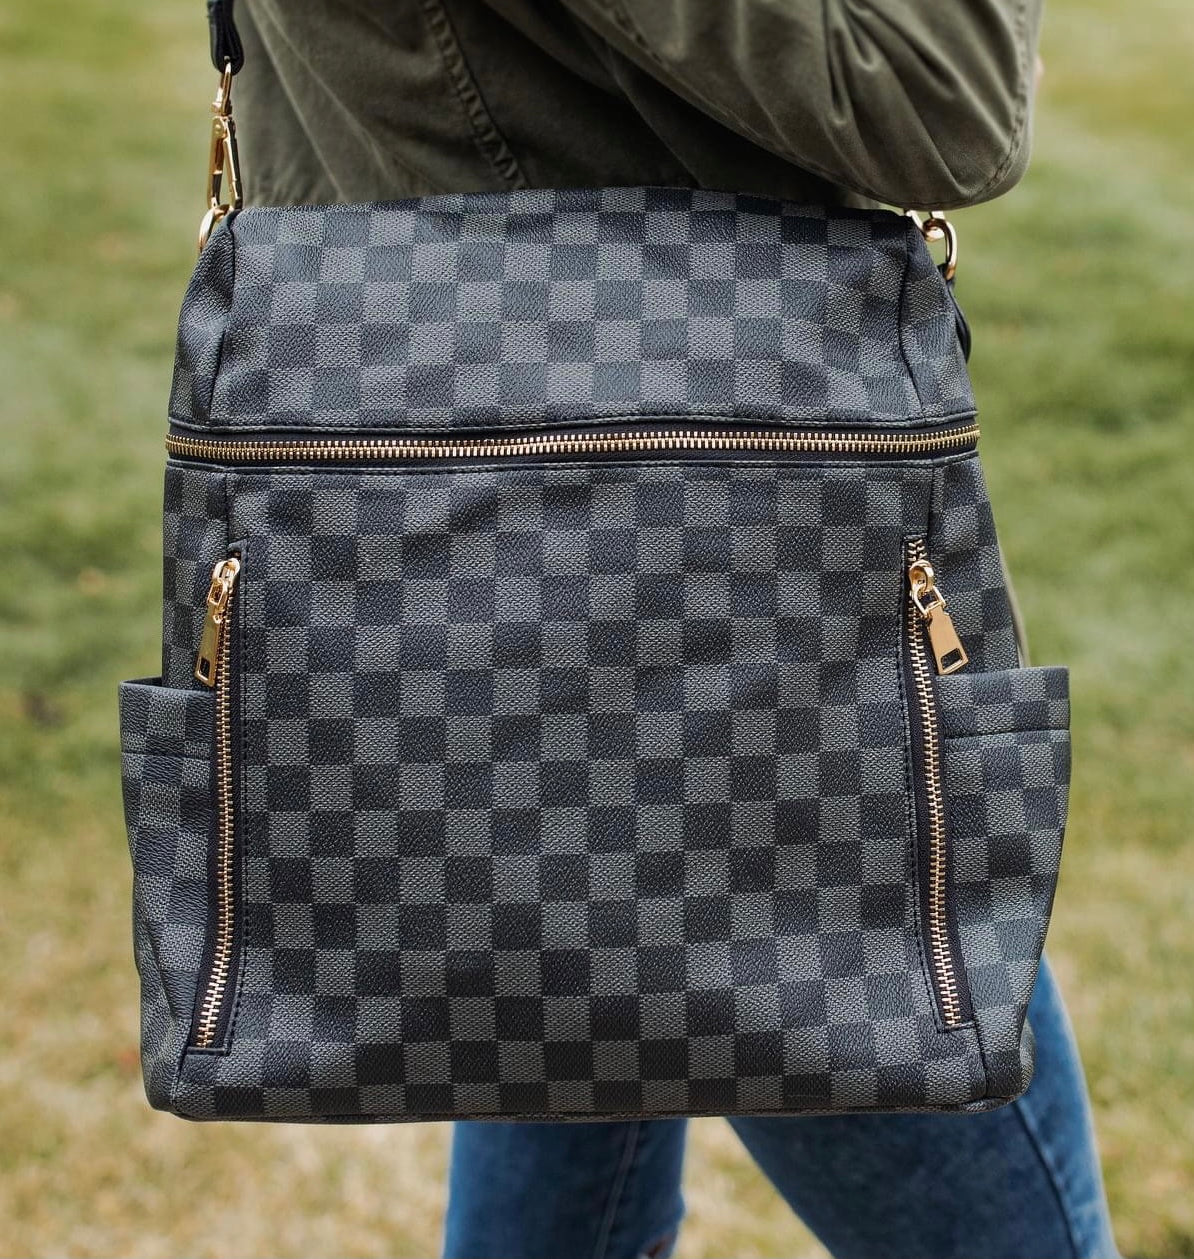 Checkered Backpacks – Bliss